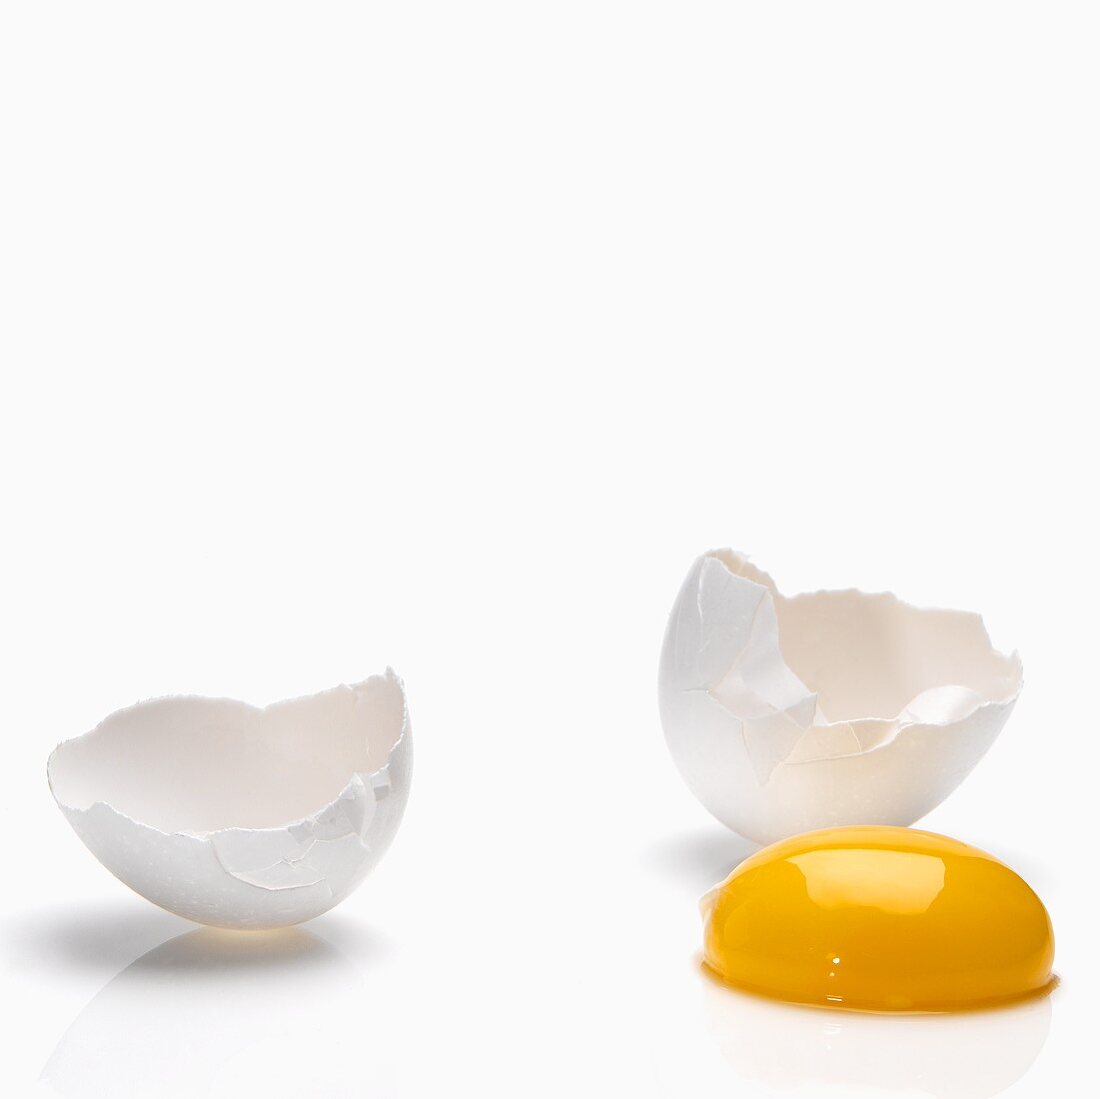 Broken White Egg; Yolk and Shells